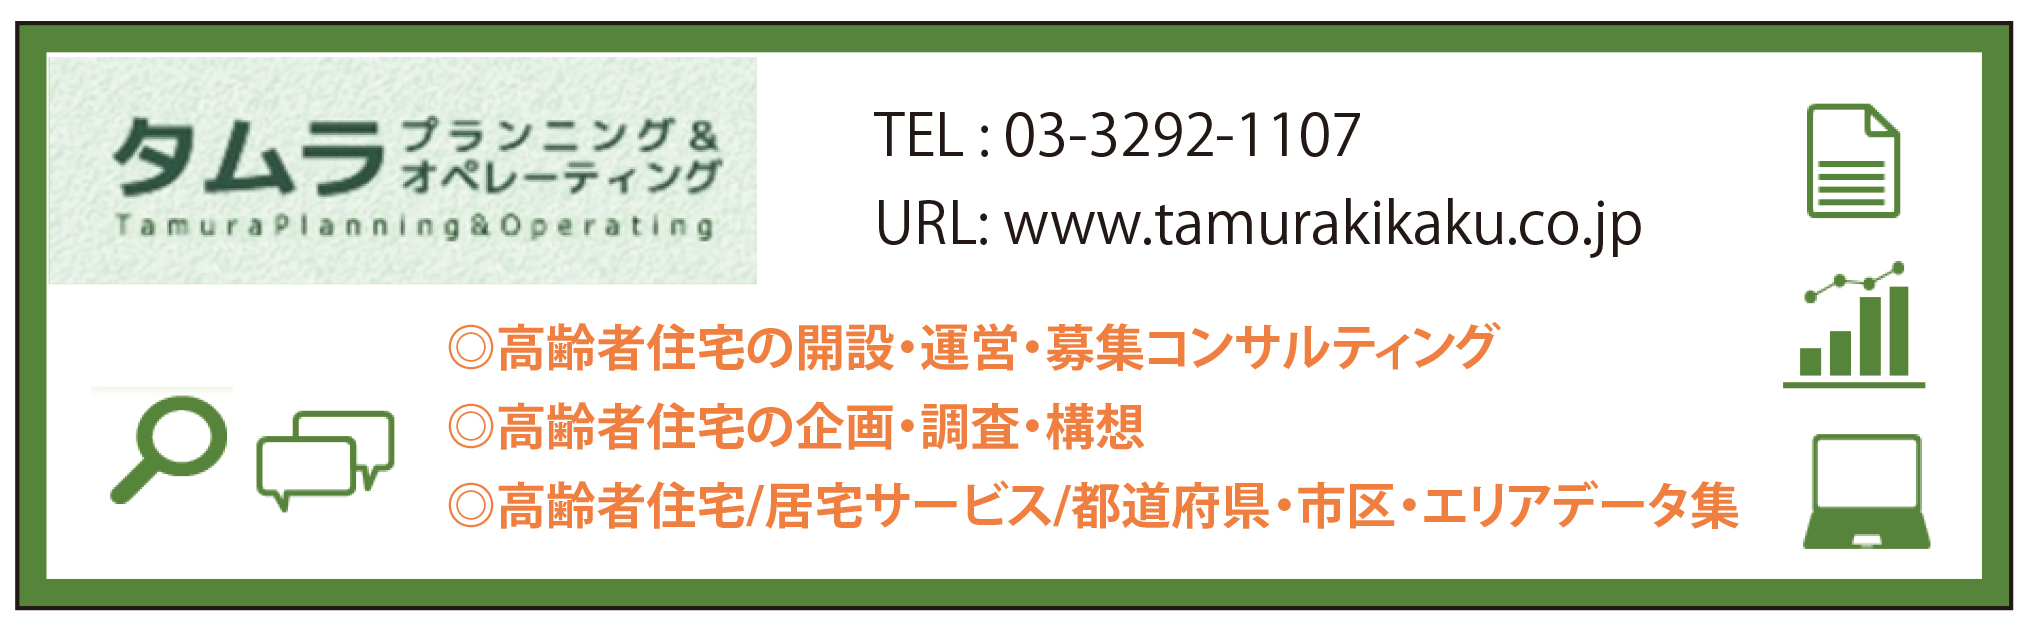 株式会社タムラ企画